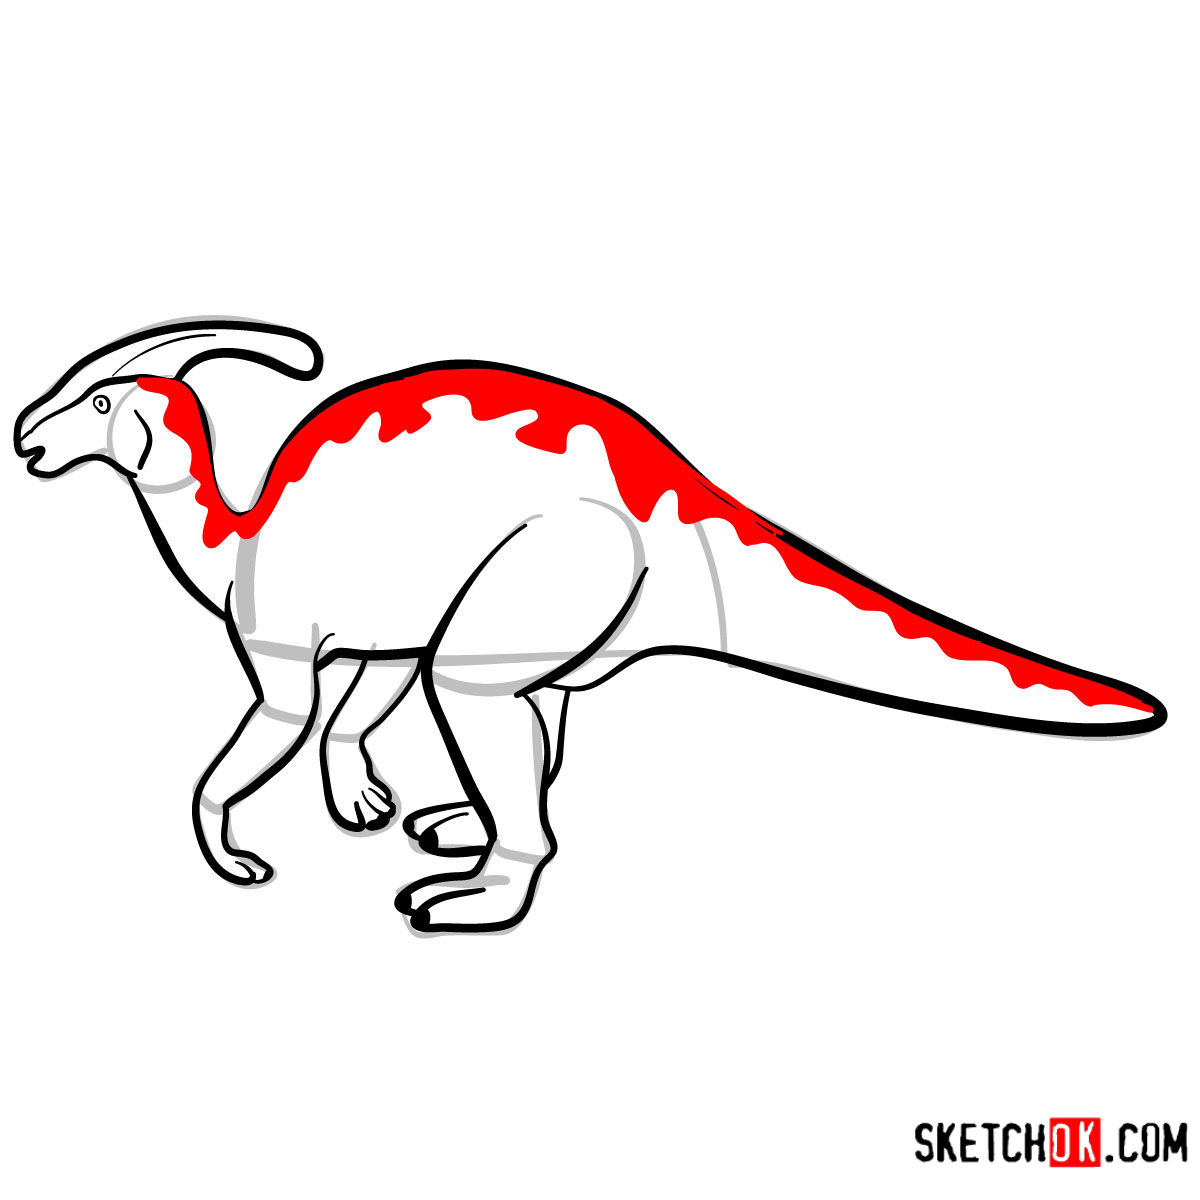 How to draw a Parasaurolophus | Extinct Animals - step 08